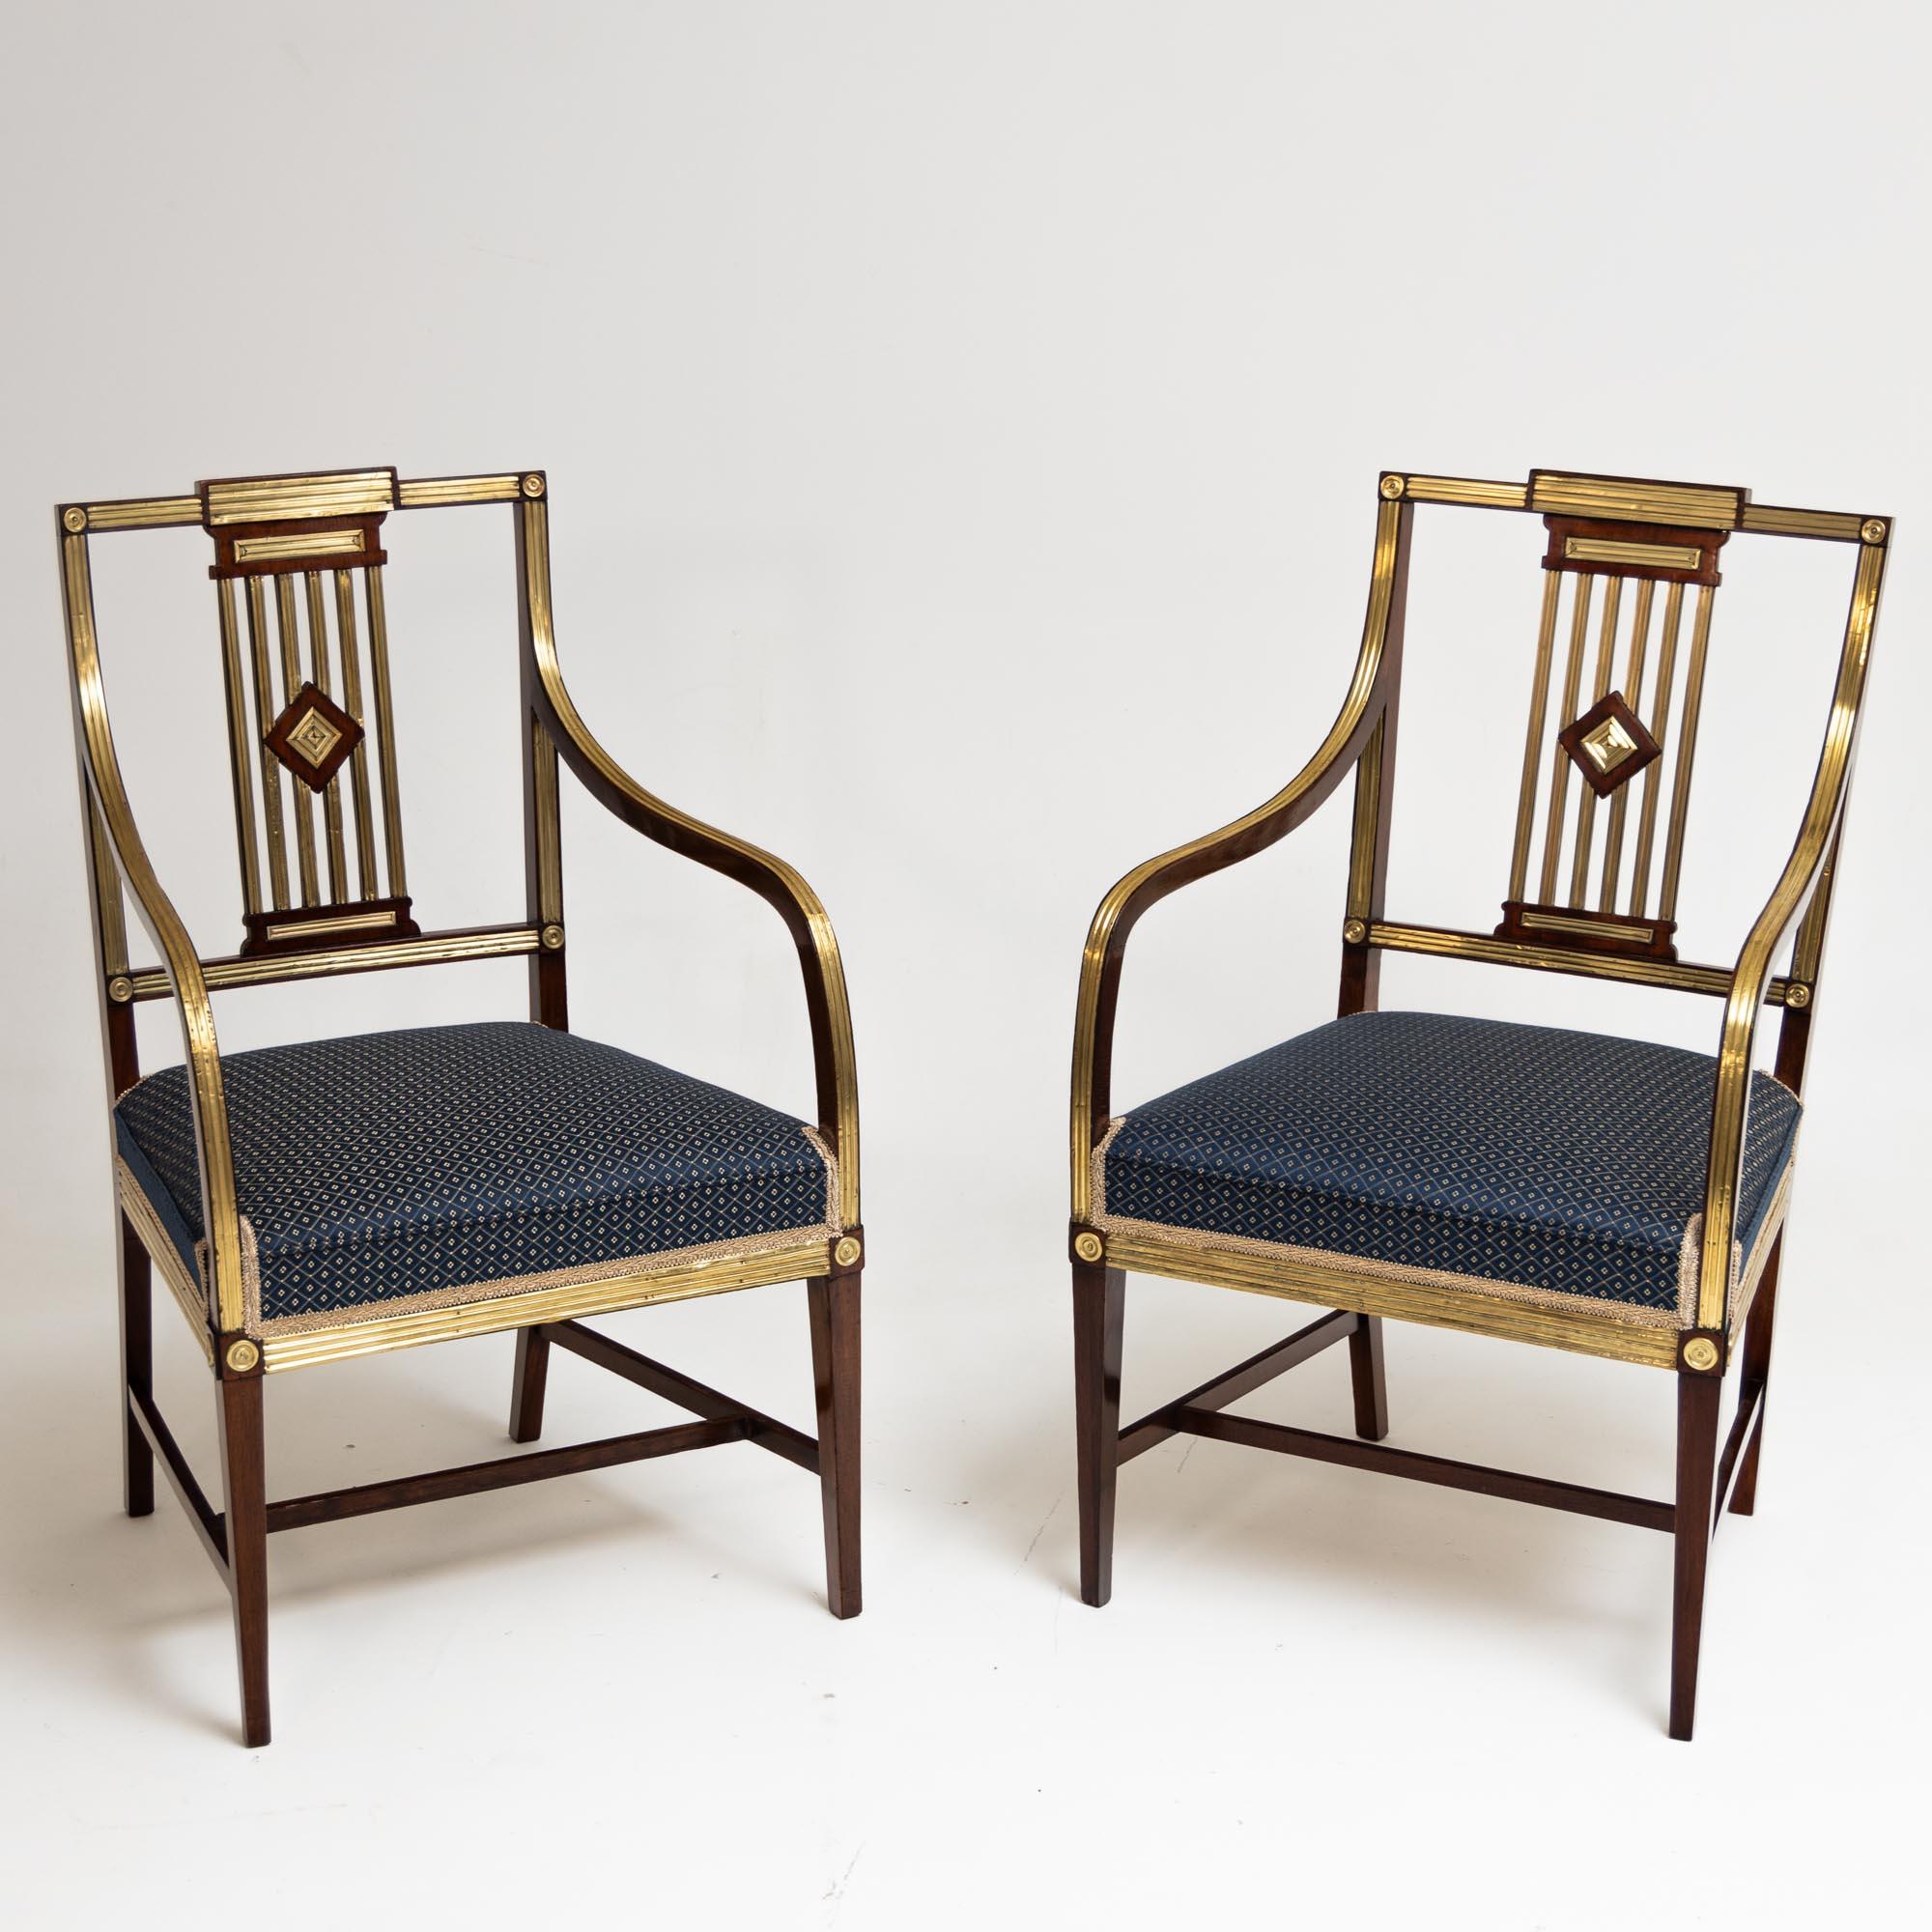 Zwei klassizistische Sessel aus Mahagoni mit Messingdekor und durchbrochenen Rückenlehnen. Die Stühle stehen auf quadratischen Spitzbeinen mit H-förmigen Verstrebungen, die in elegant geschwungene, hoch angesetzte Armlehnen mit vergoldetem Dekor